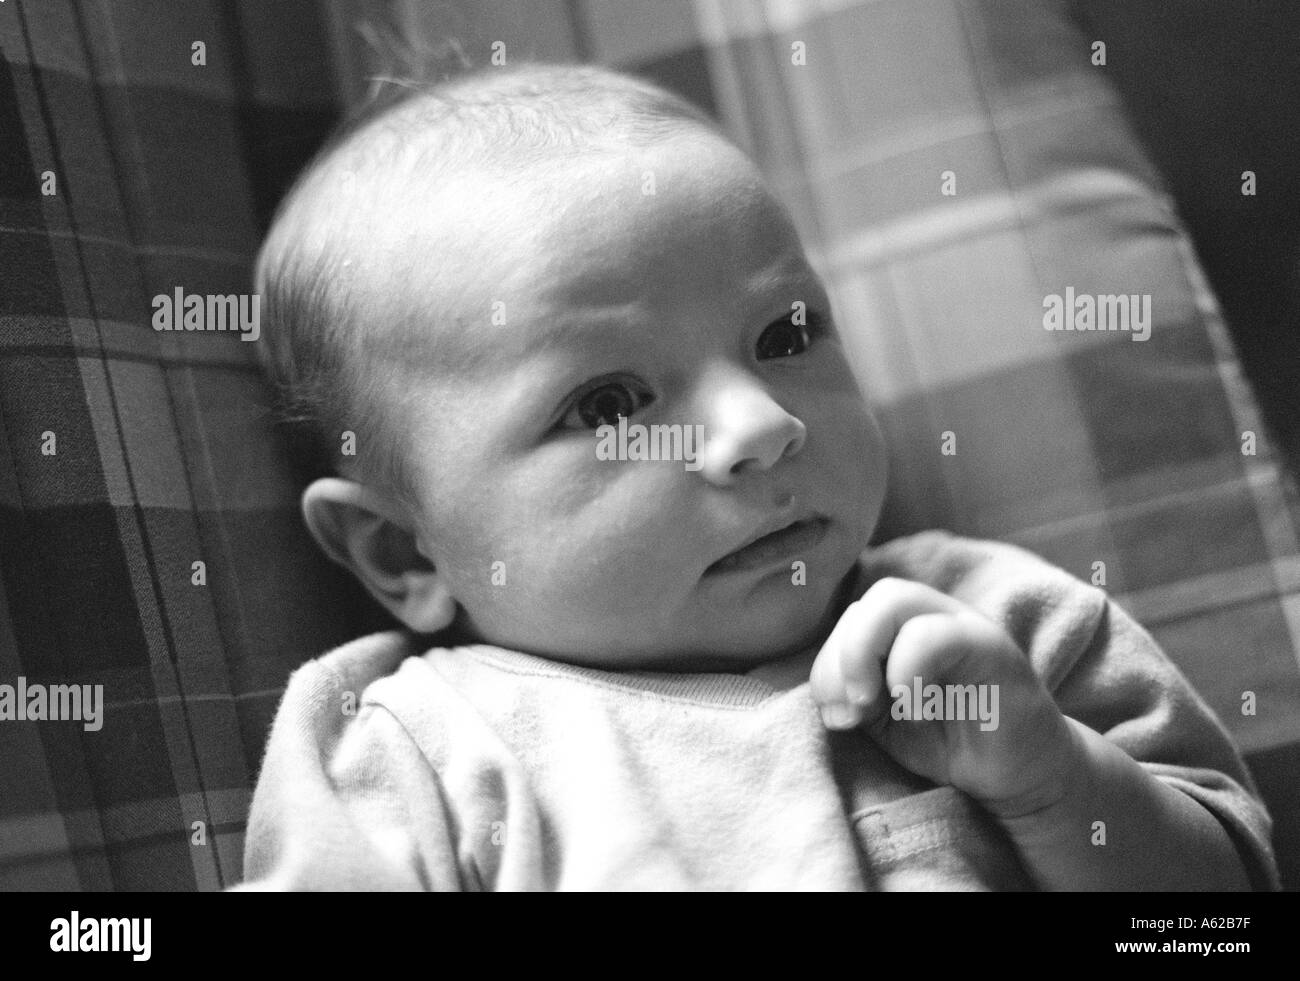 Retrato de cabeza y hombros del bebé Foto de stock